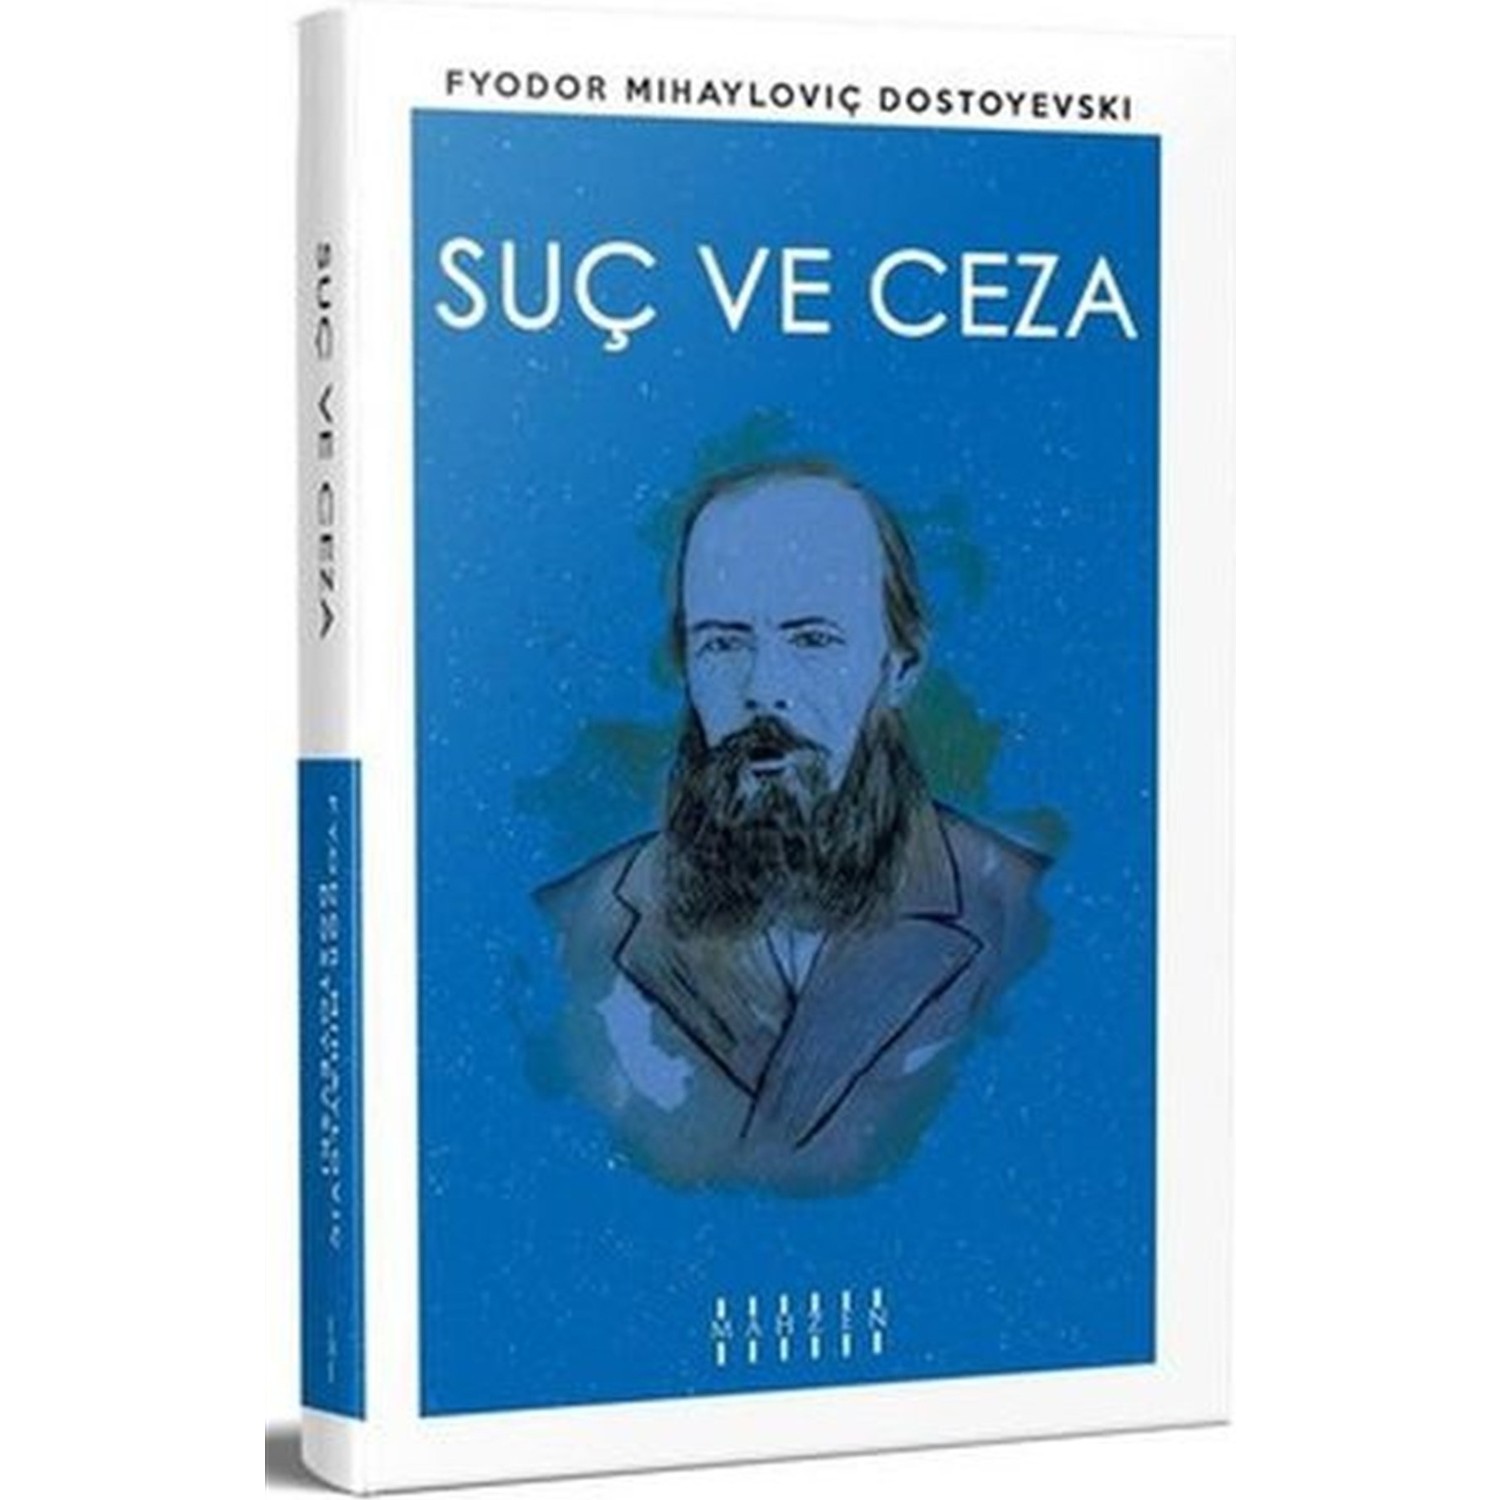 Suç ve Ceza Fyodor Mihayloviç Dostoyevski Kitabı ve Fiyatı